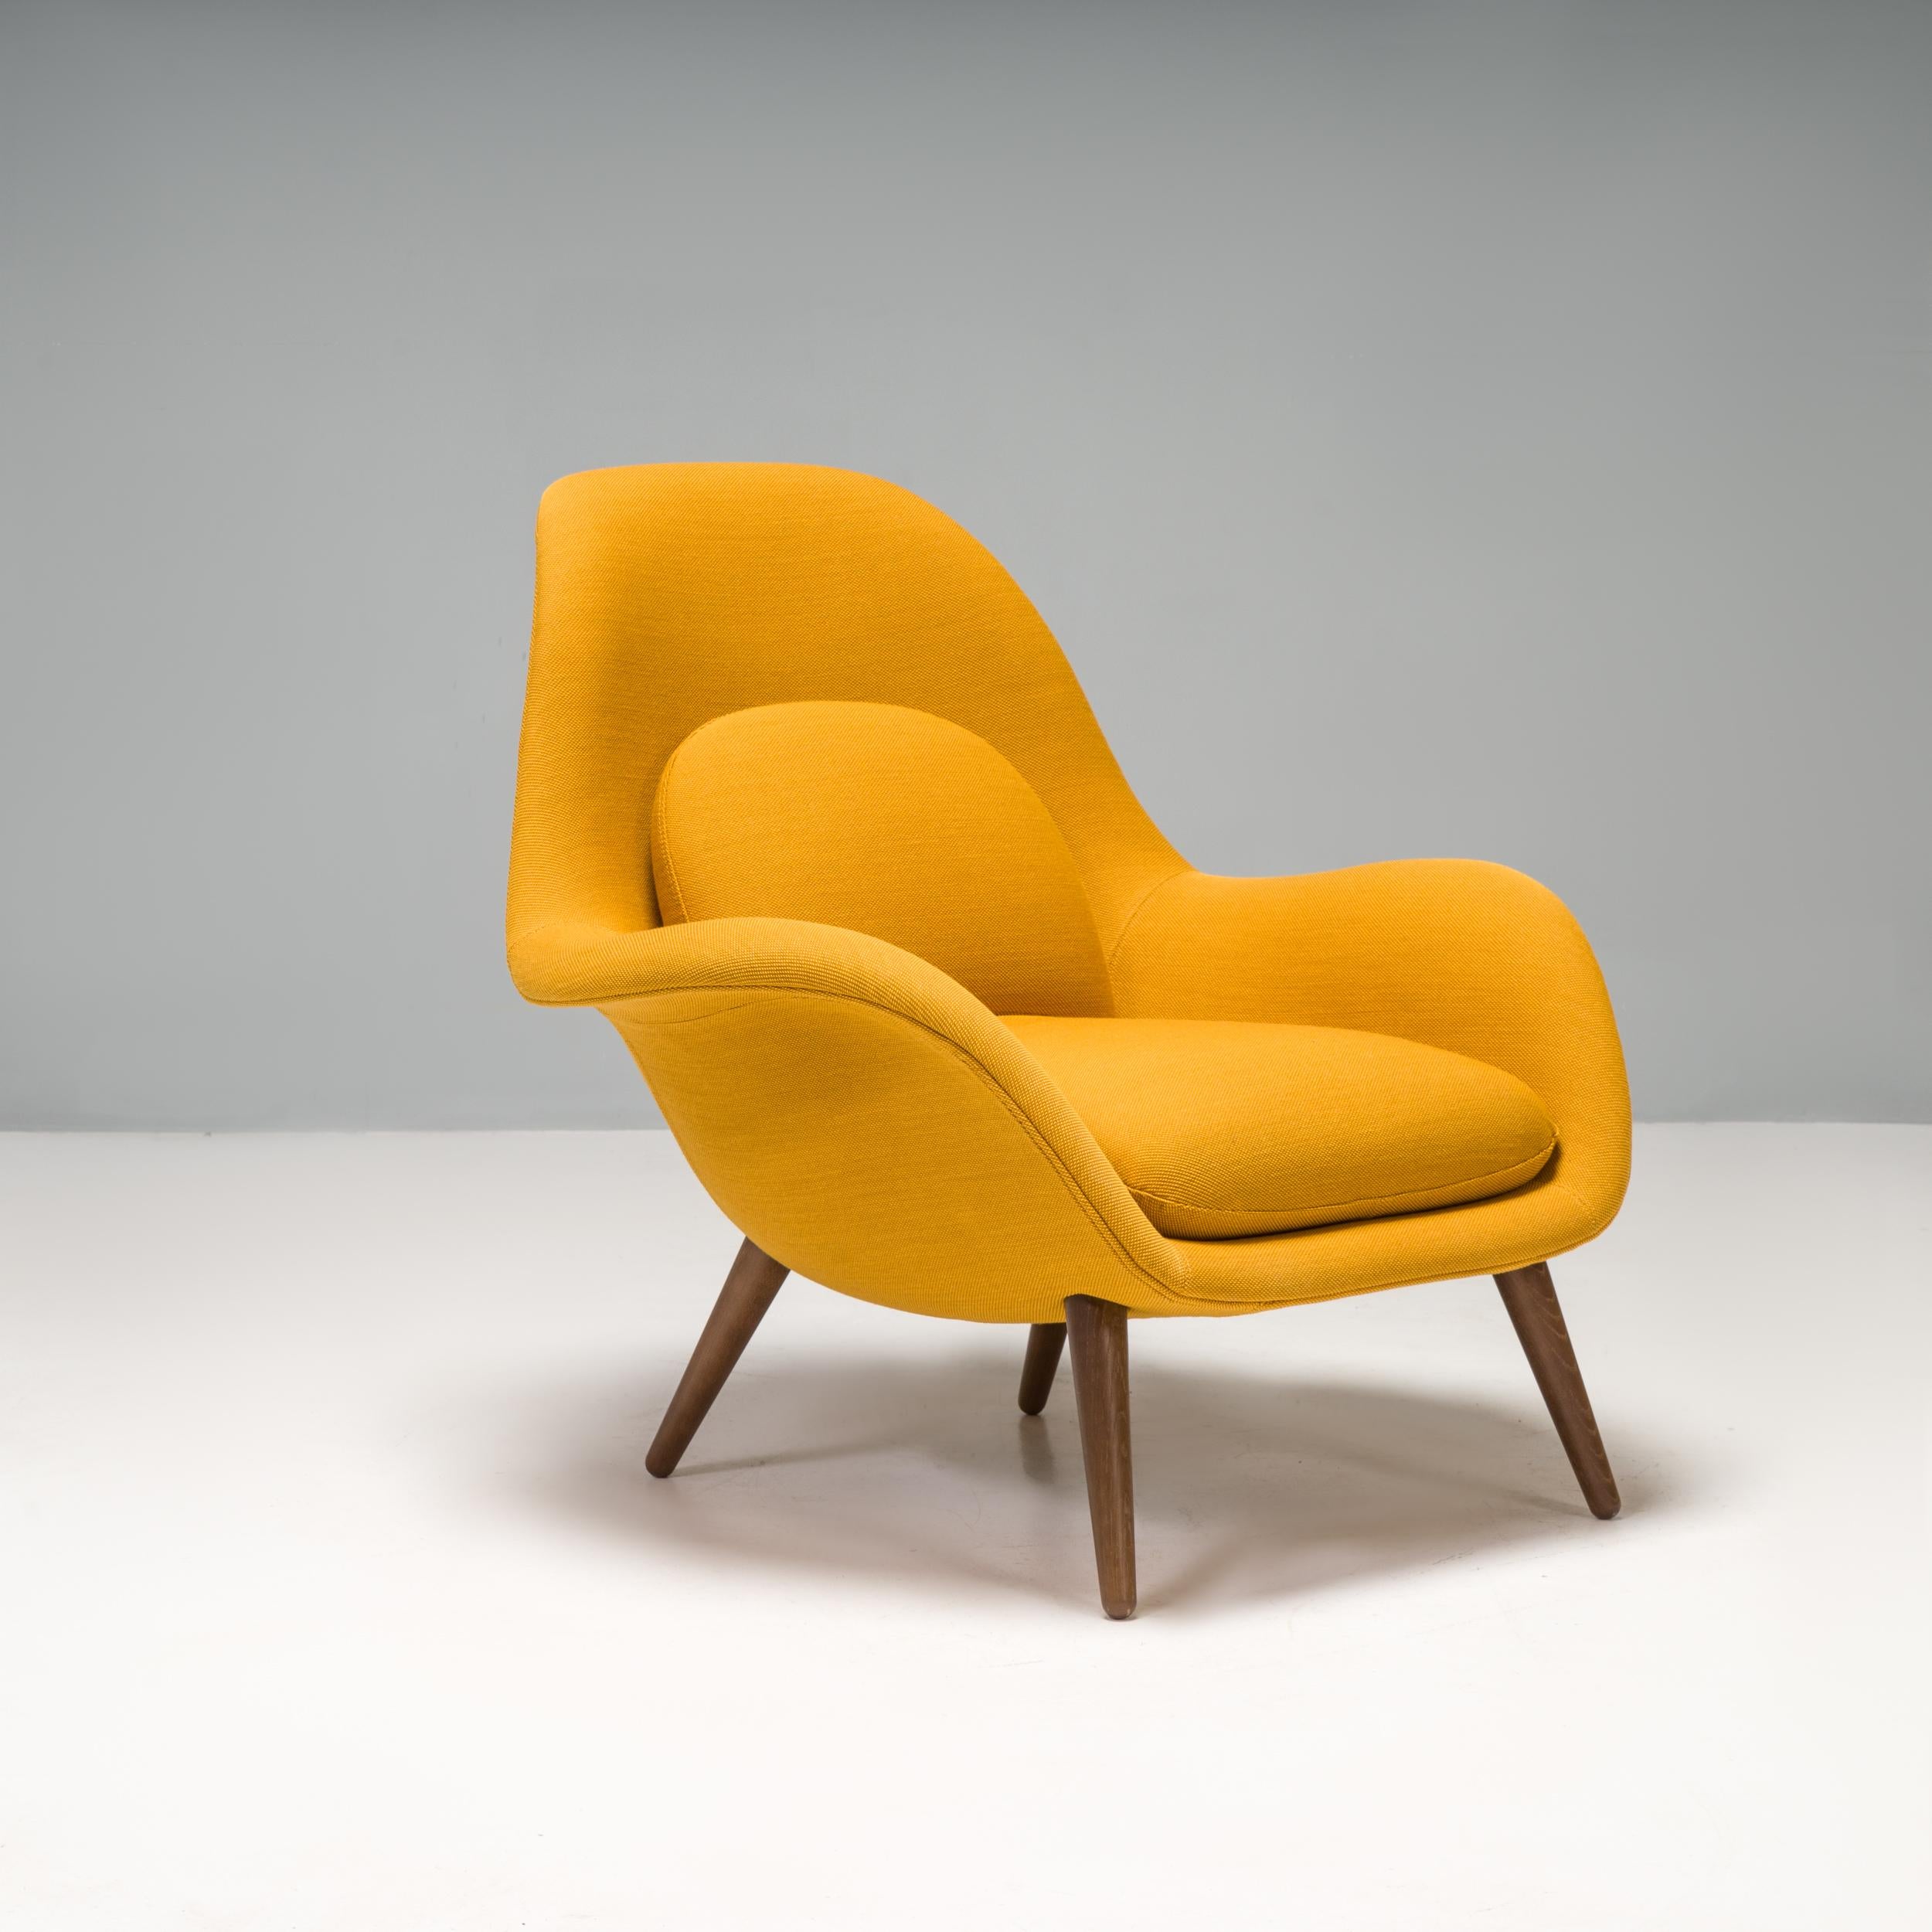 Conçu par Space Copenhagen pour le fabricant de meubles danois Fredericia, ce fauteuil Swoon a été fabriqué en 2021.

Dotée d'une structure en noyer laqué, la chaise présente une silhouette sculpturale avec un haut dossier incurvé, donnant une